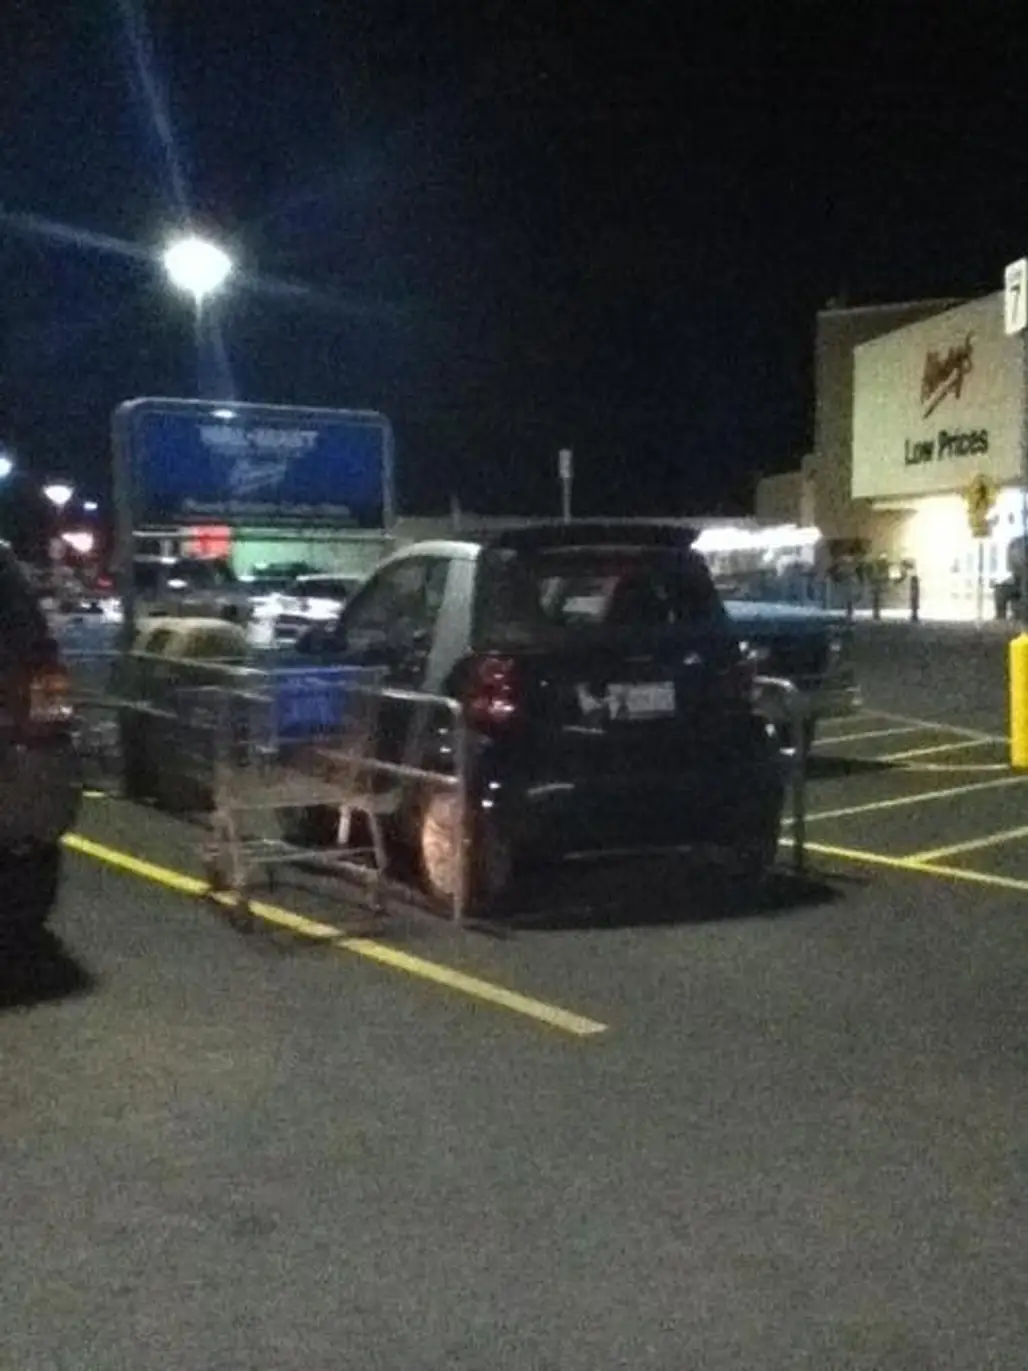 That's Not a Shopping Cart